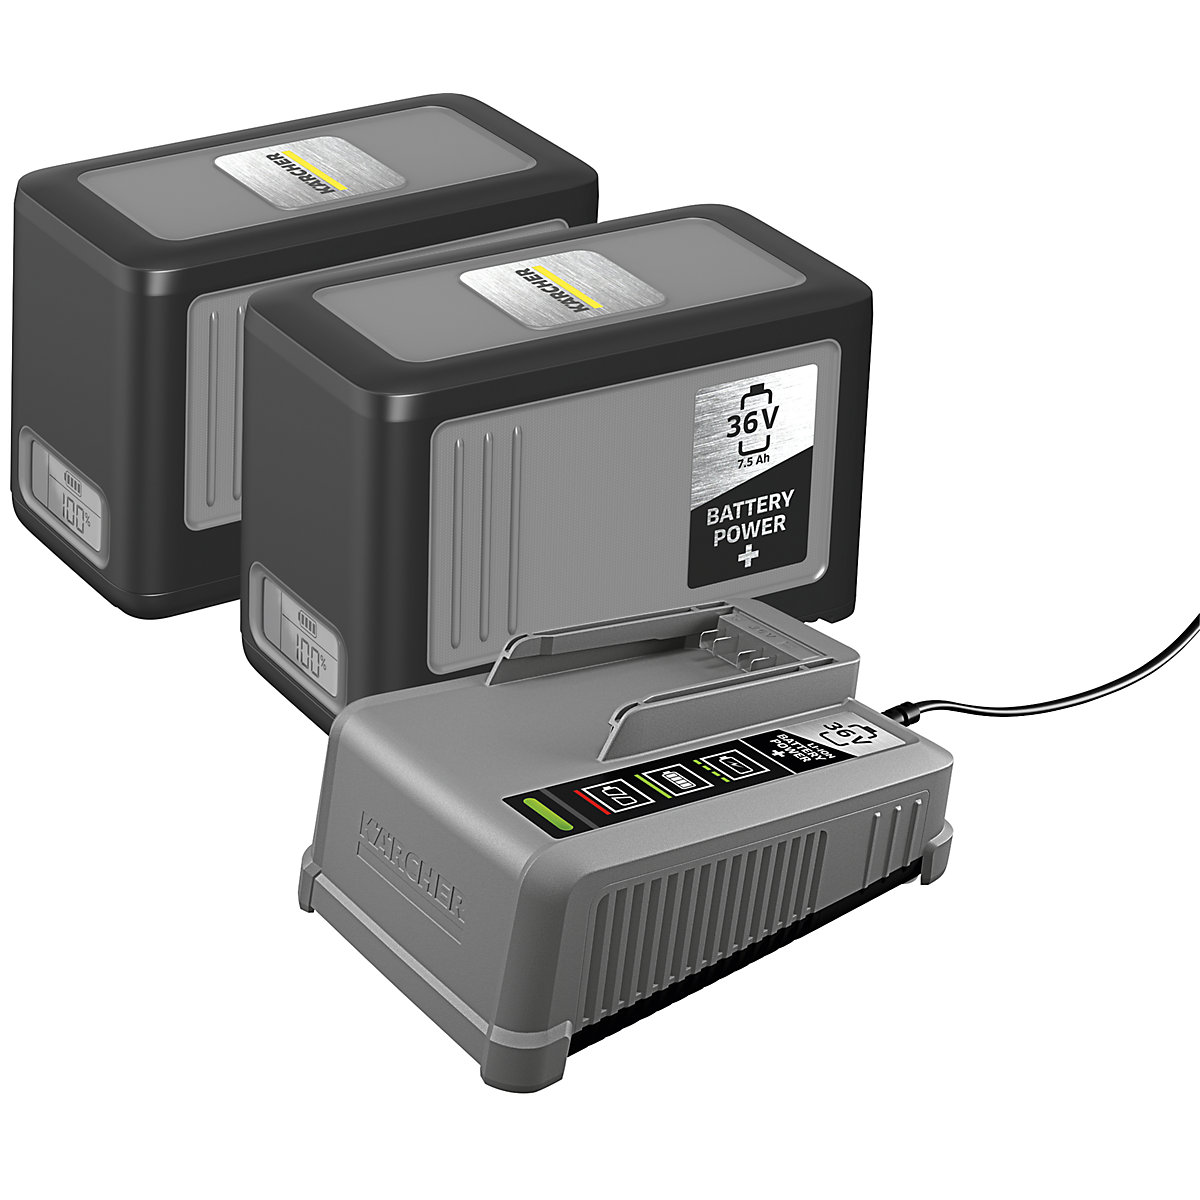 Starter kit con 2 batterie ricaricabili agli ioni di litio / 1 caricatore – Kärcher